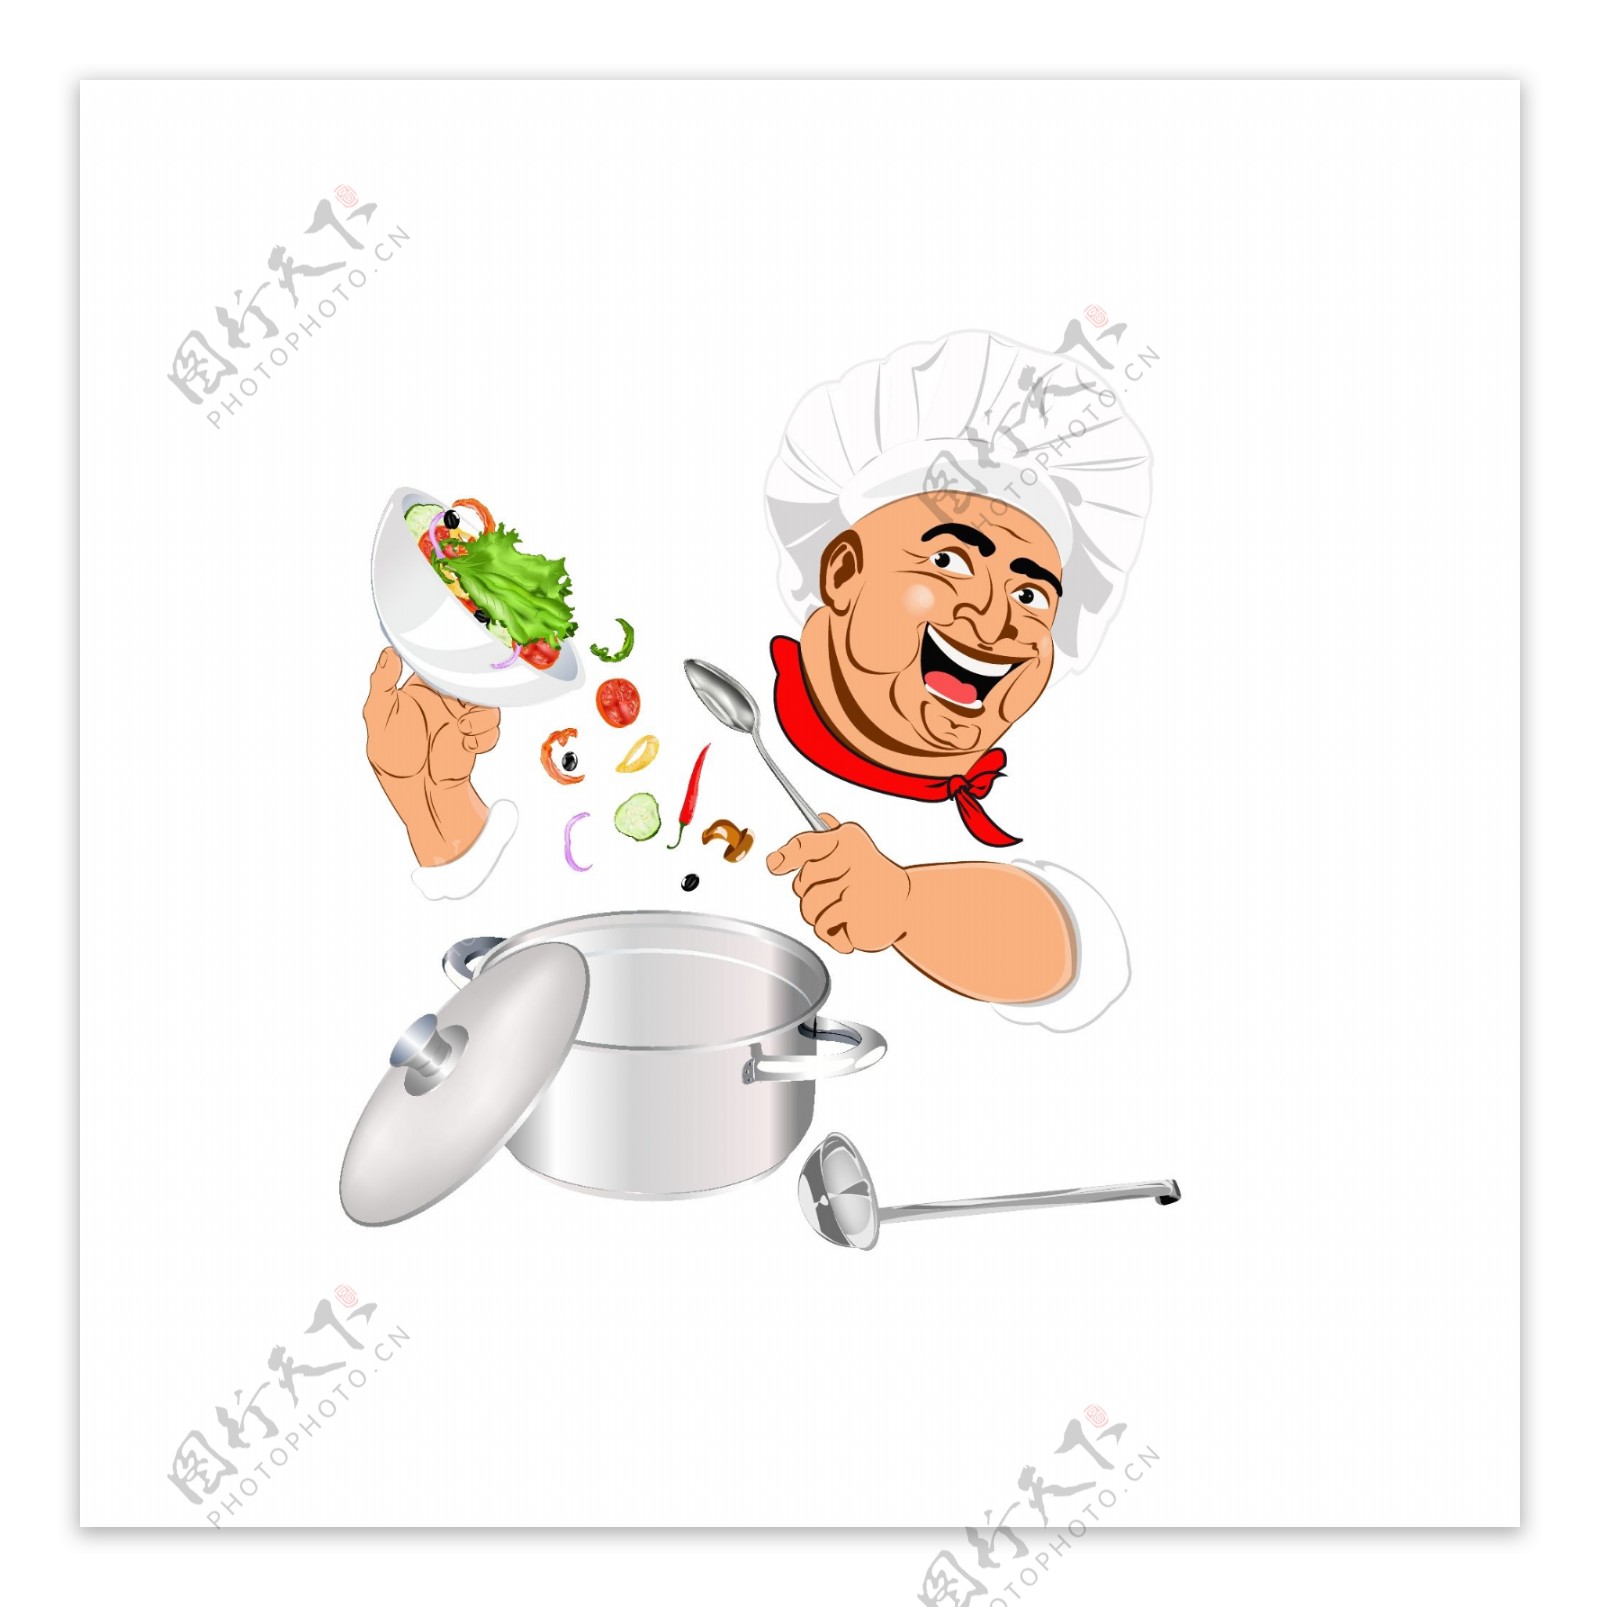 厨师烹饪食物装饰图标ai素材